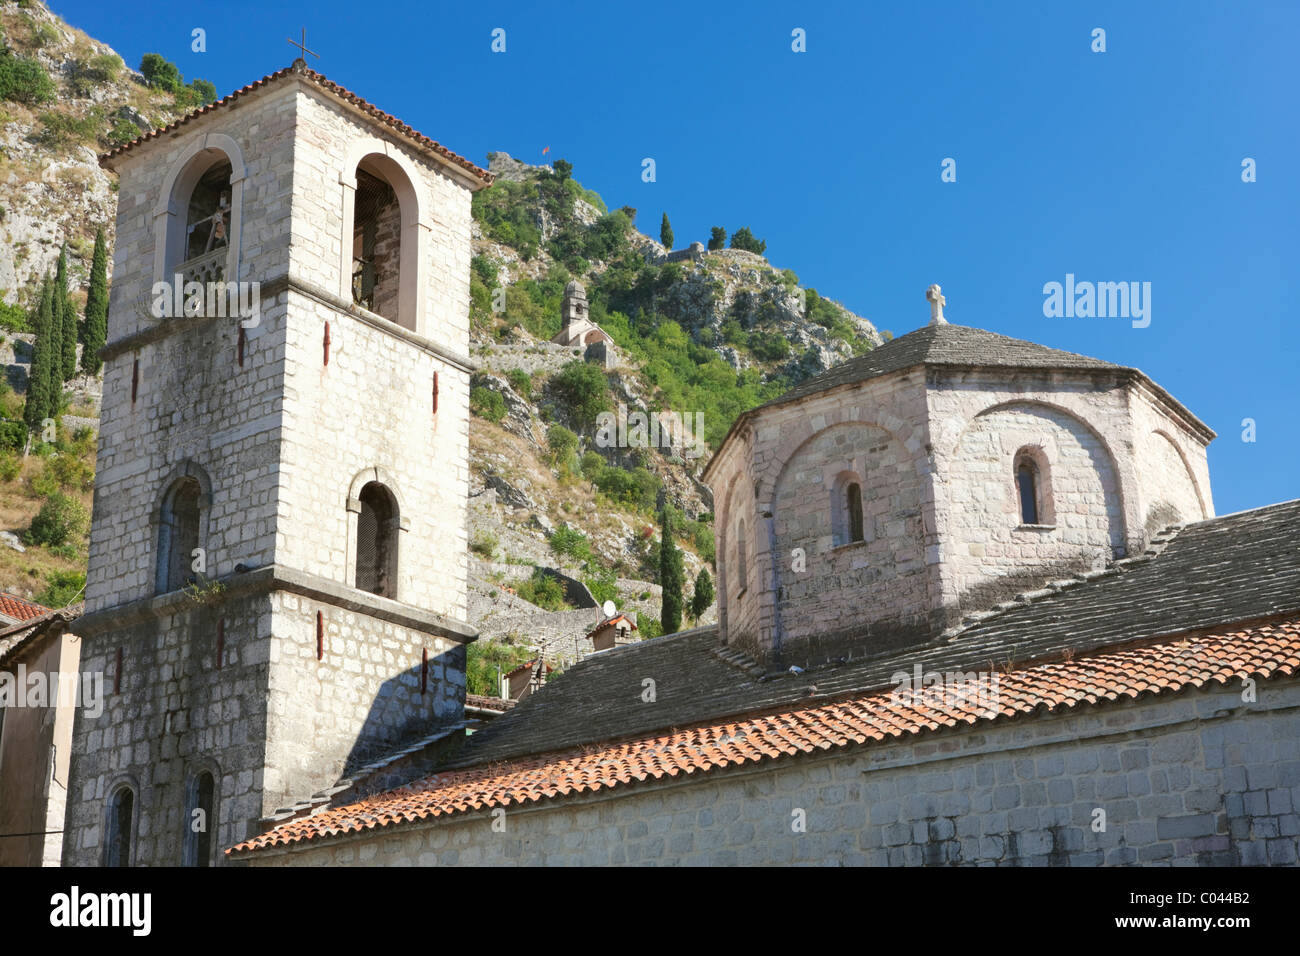 Church of St Mary, city wall in background, Kotor, Boka Kotorska, Montenegro Stock Photo